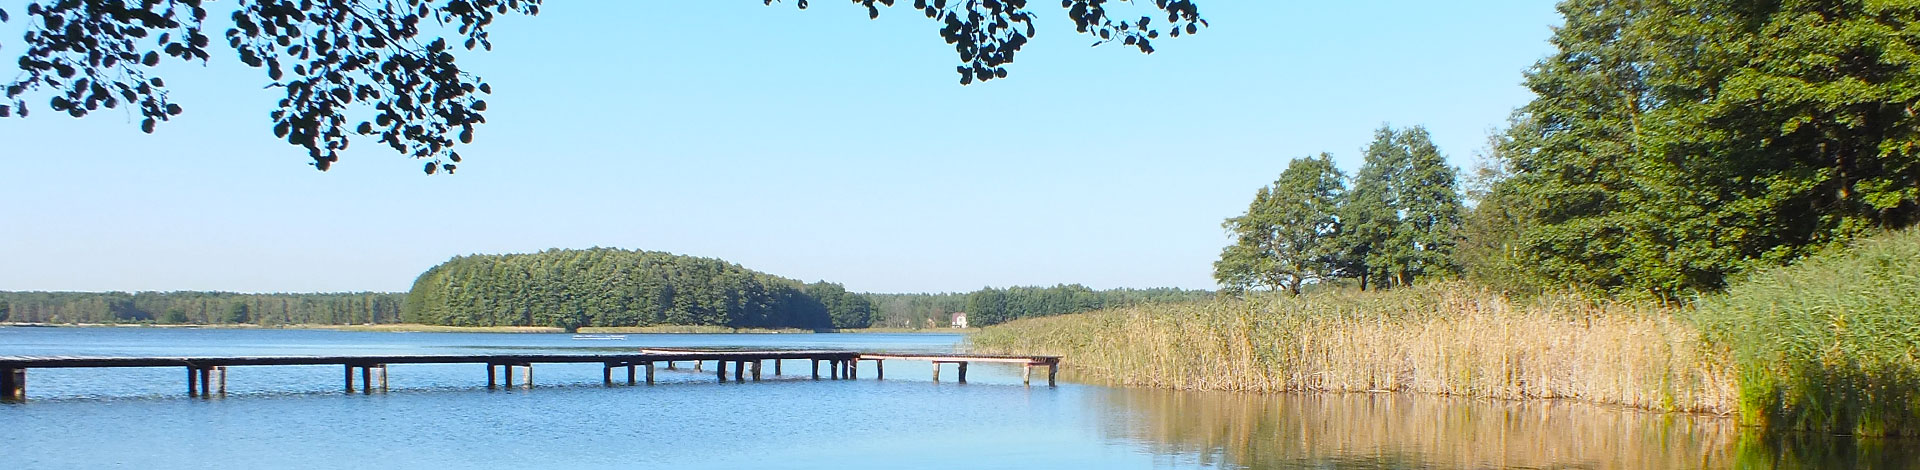 Zdjęcie przedstawia jezioro i pomost otoczone drzewami